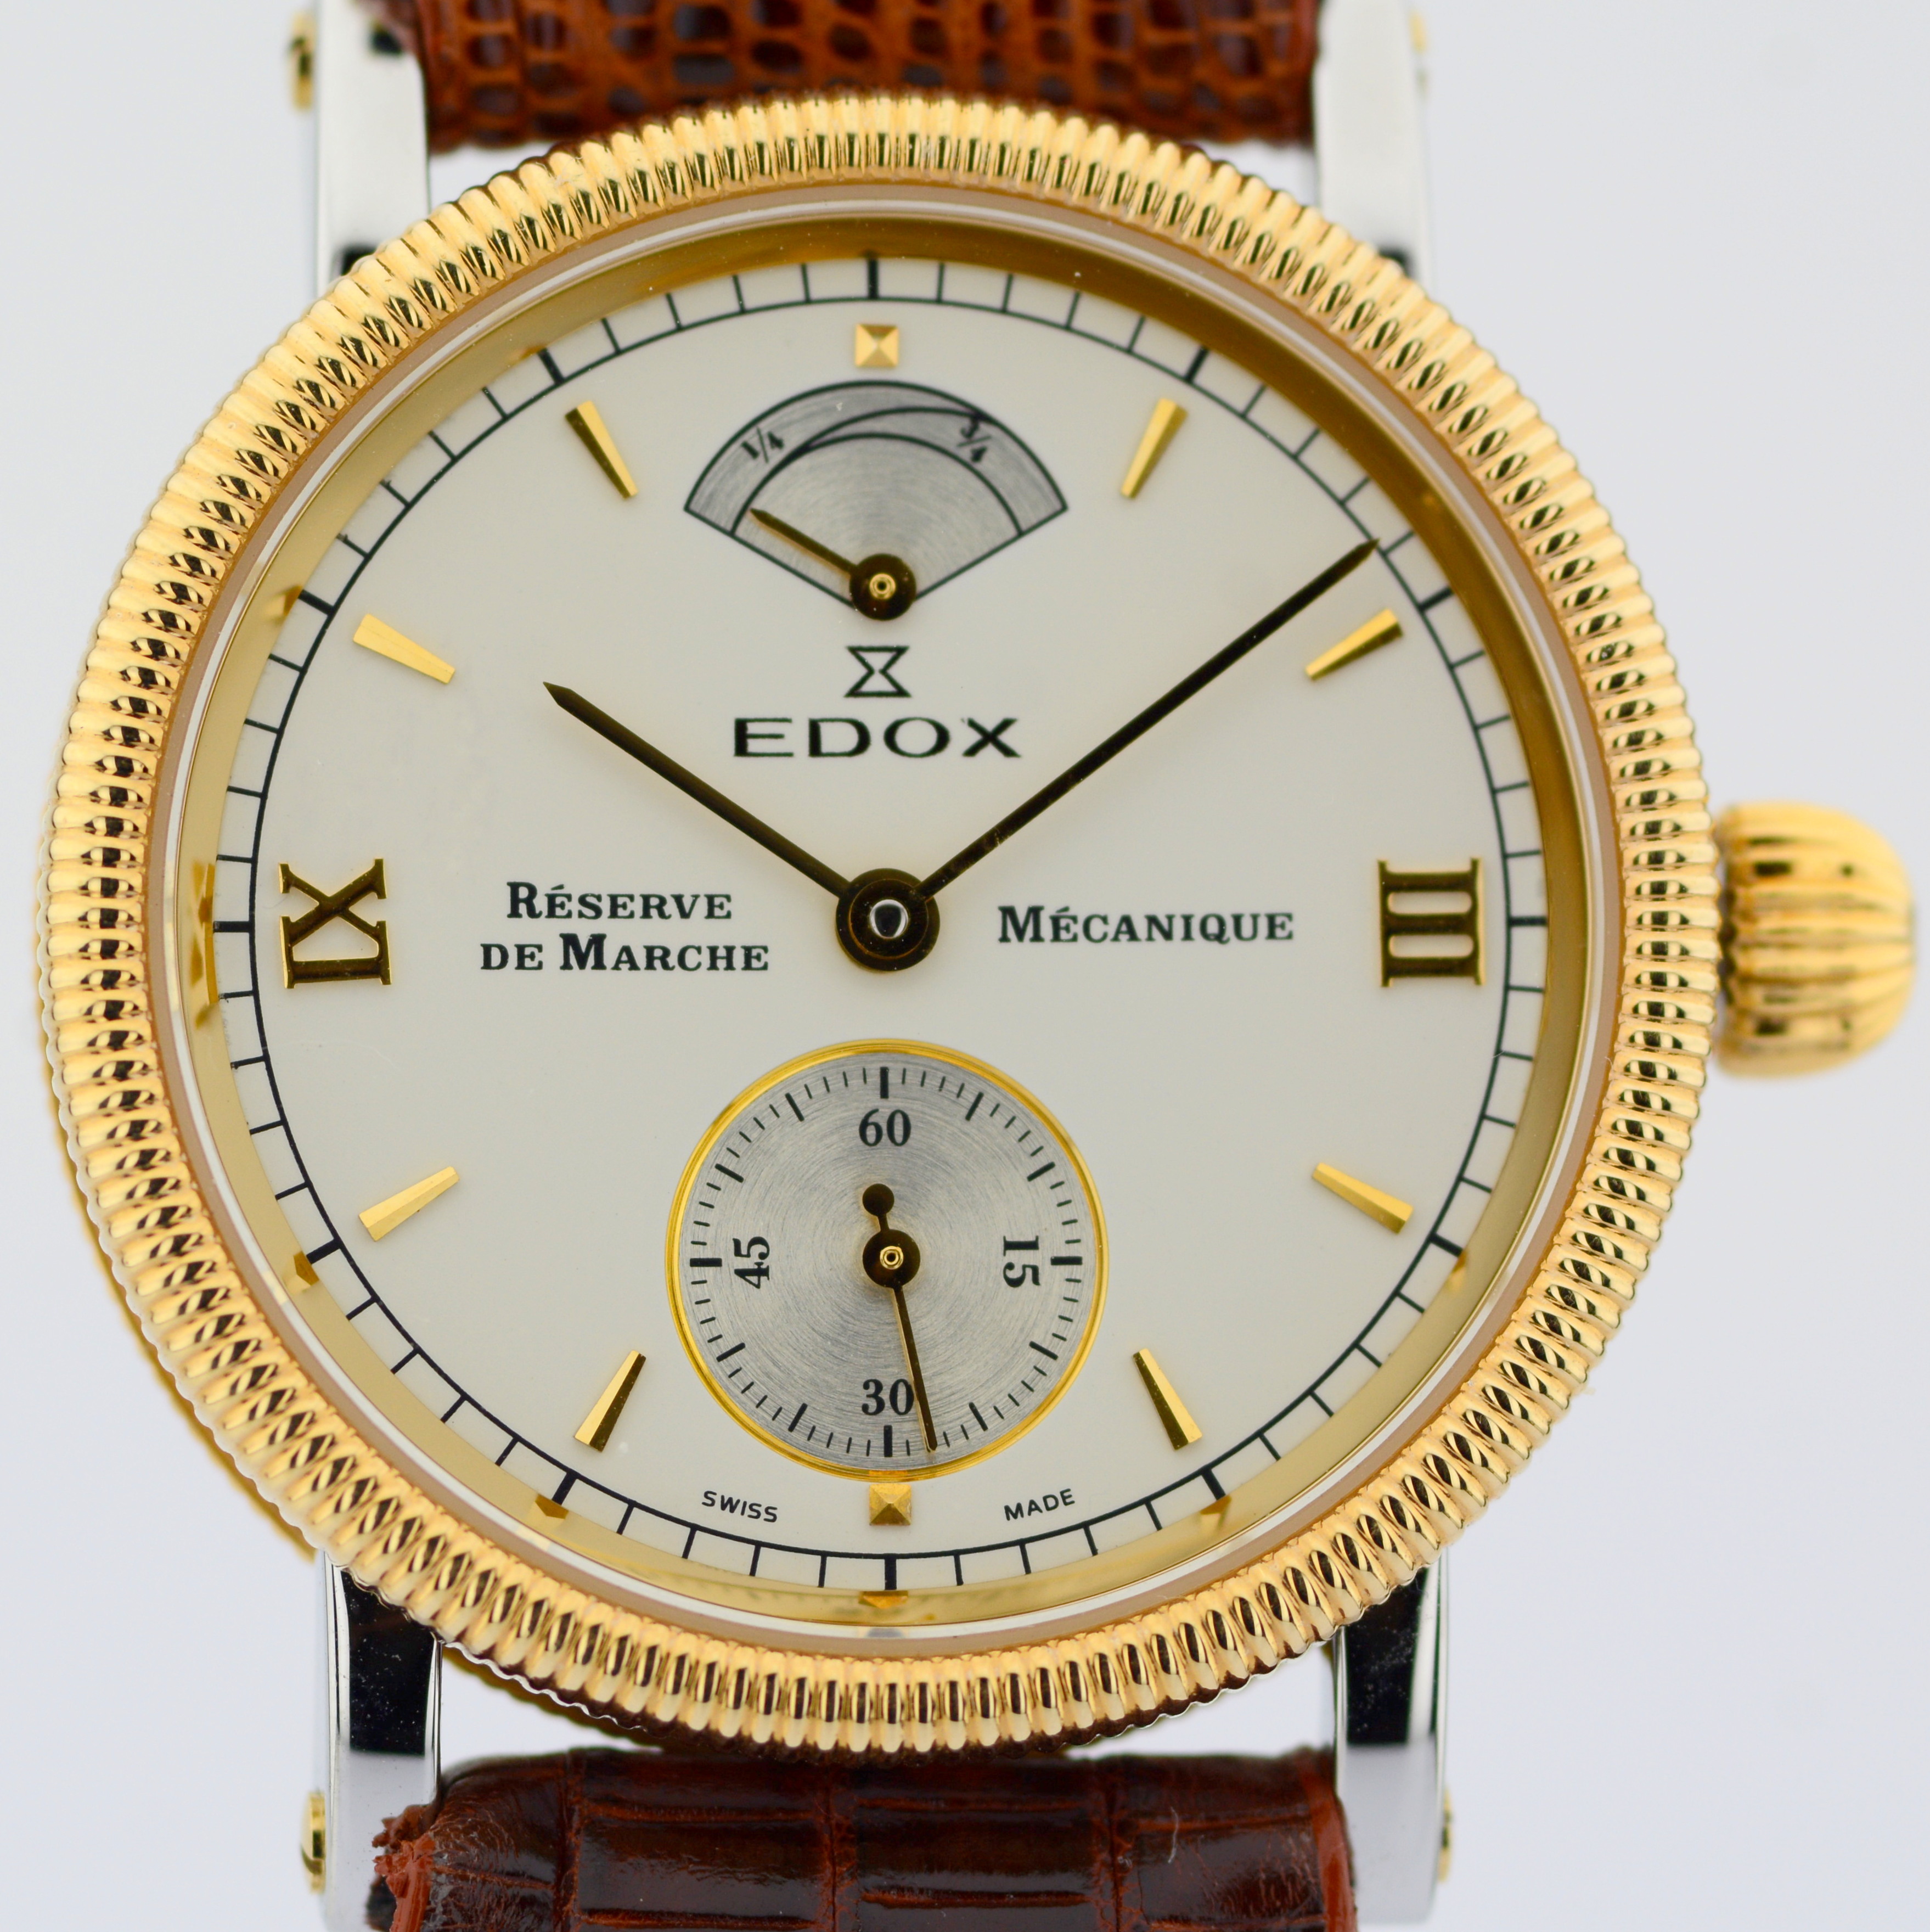 Edox / Reserve De Marche - Mecanique (Unworn) - Unisex Steel Wrist Watch - Image 2 of 7